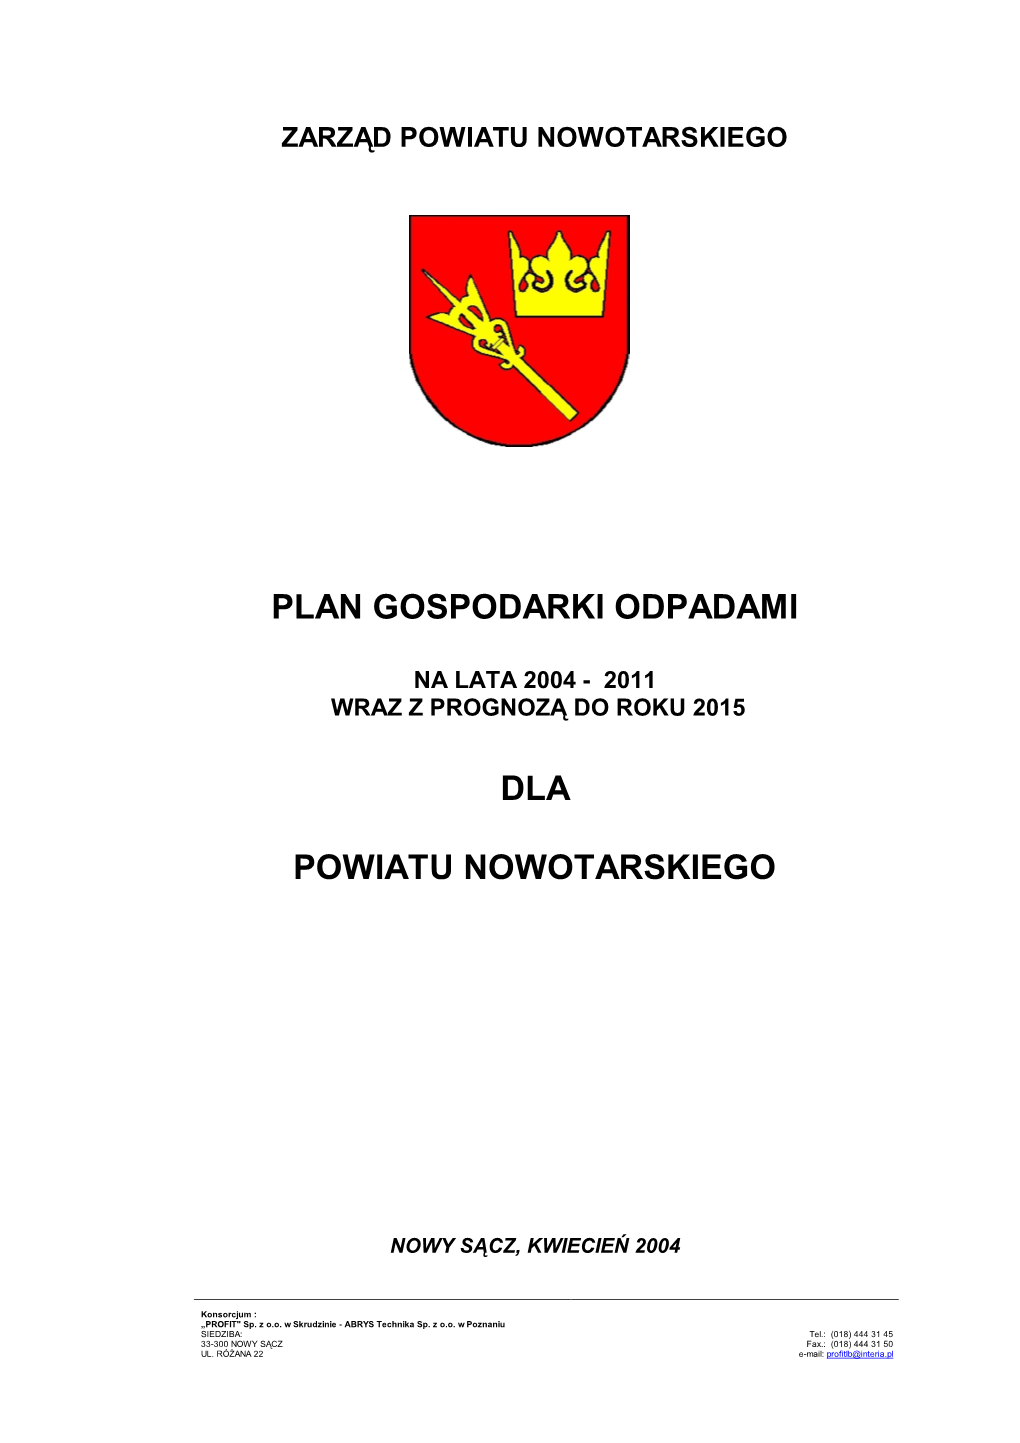 Plan Gospodarki Odpadami Dla Powiatu Nowotarskiego Został Sporządzony Jako Realizacja Ustaleń Ustawy Z Dnia 27 Kwietnia 2001R